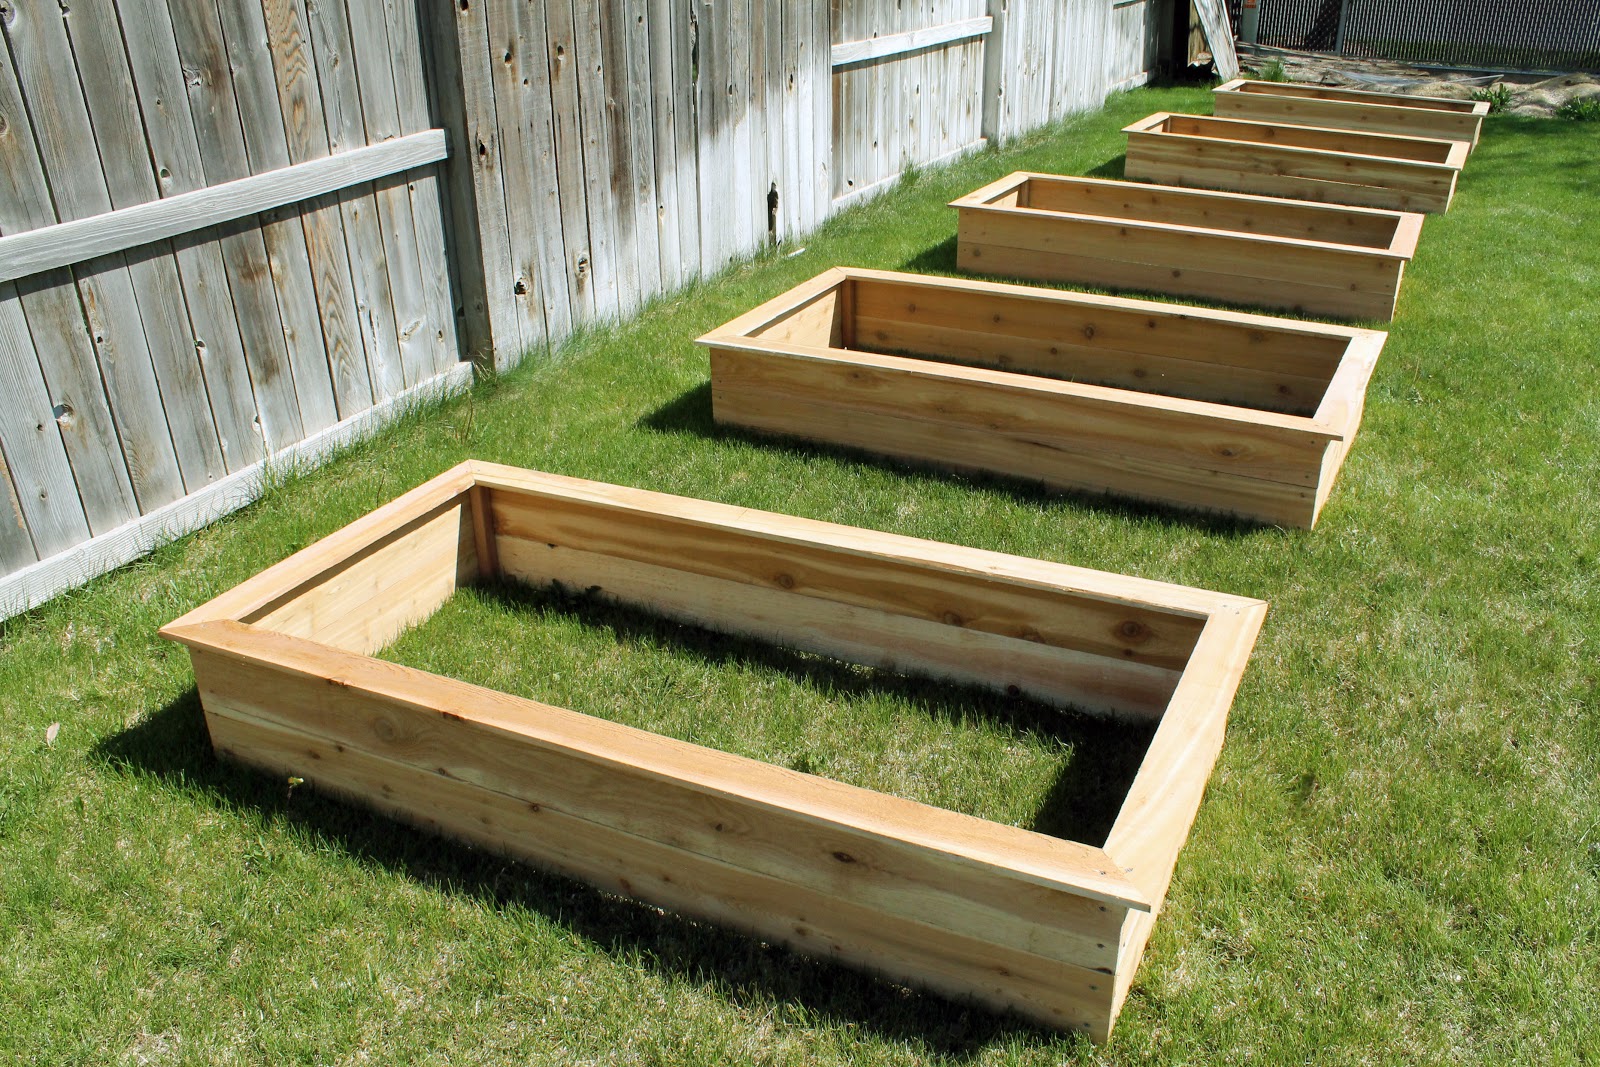 Pretty Privacy Fence Planter Boxes Ideas